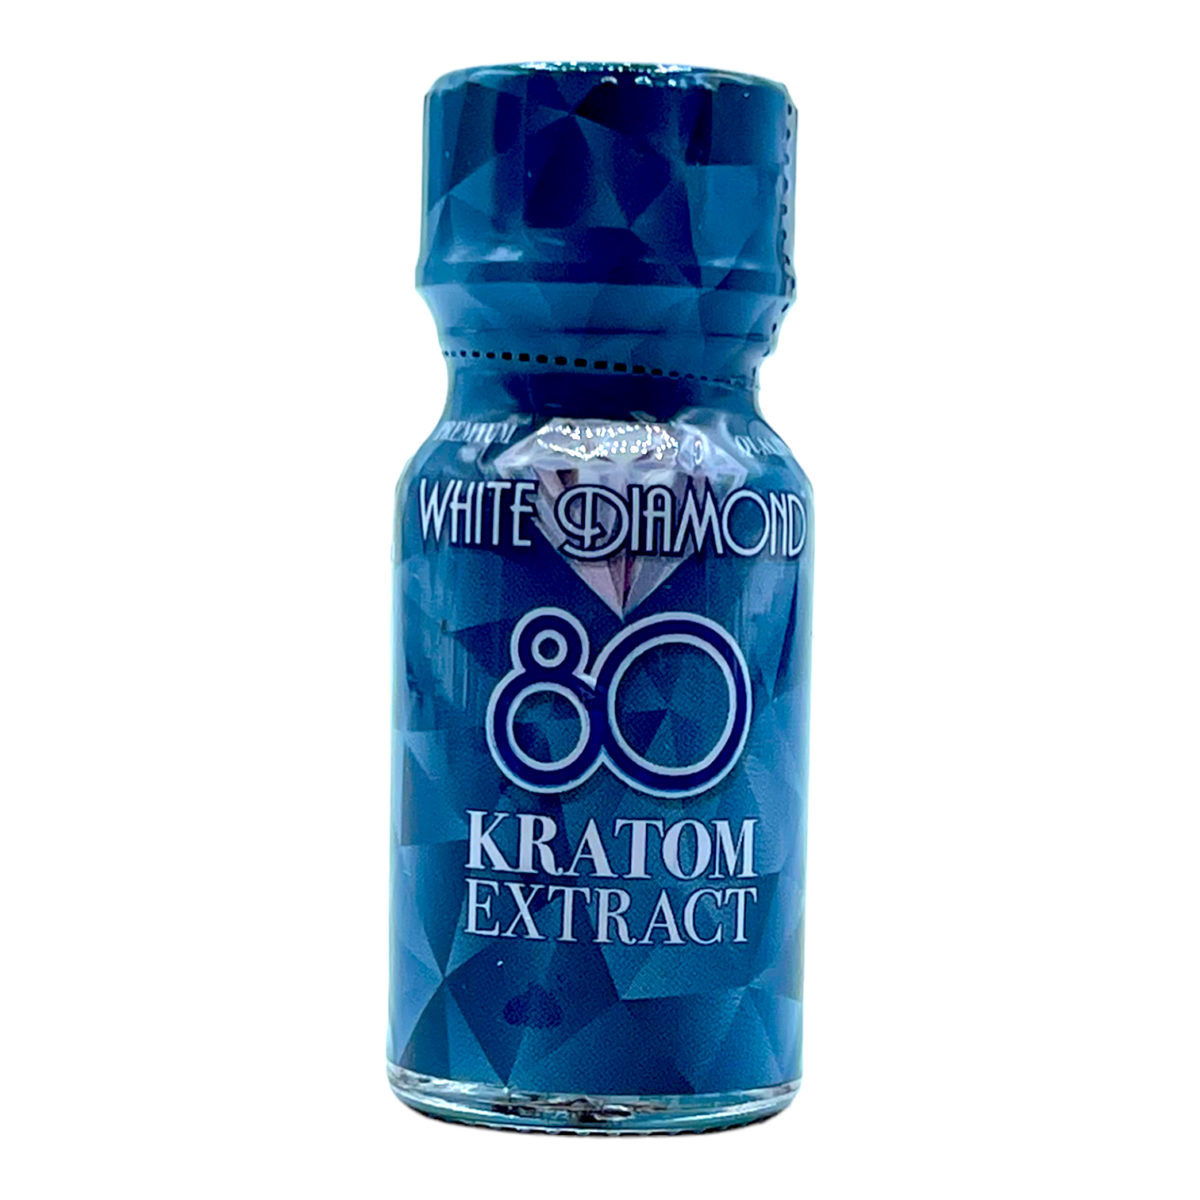 White Diamond 80 Kratom Extract Liquid Shot – 10ml